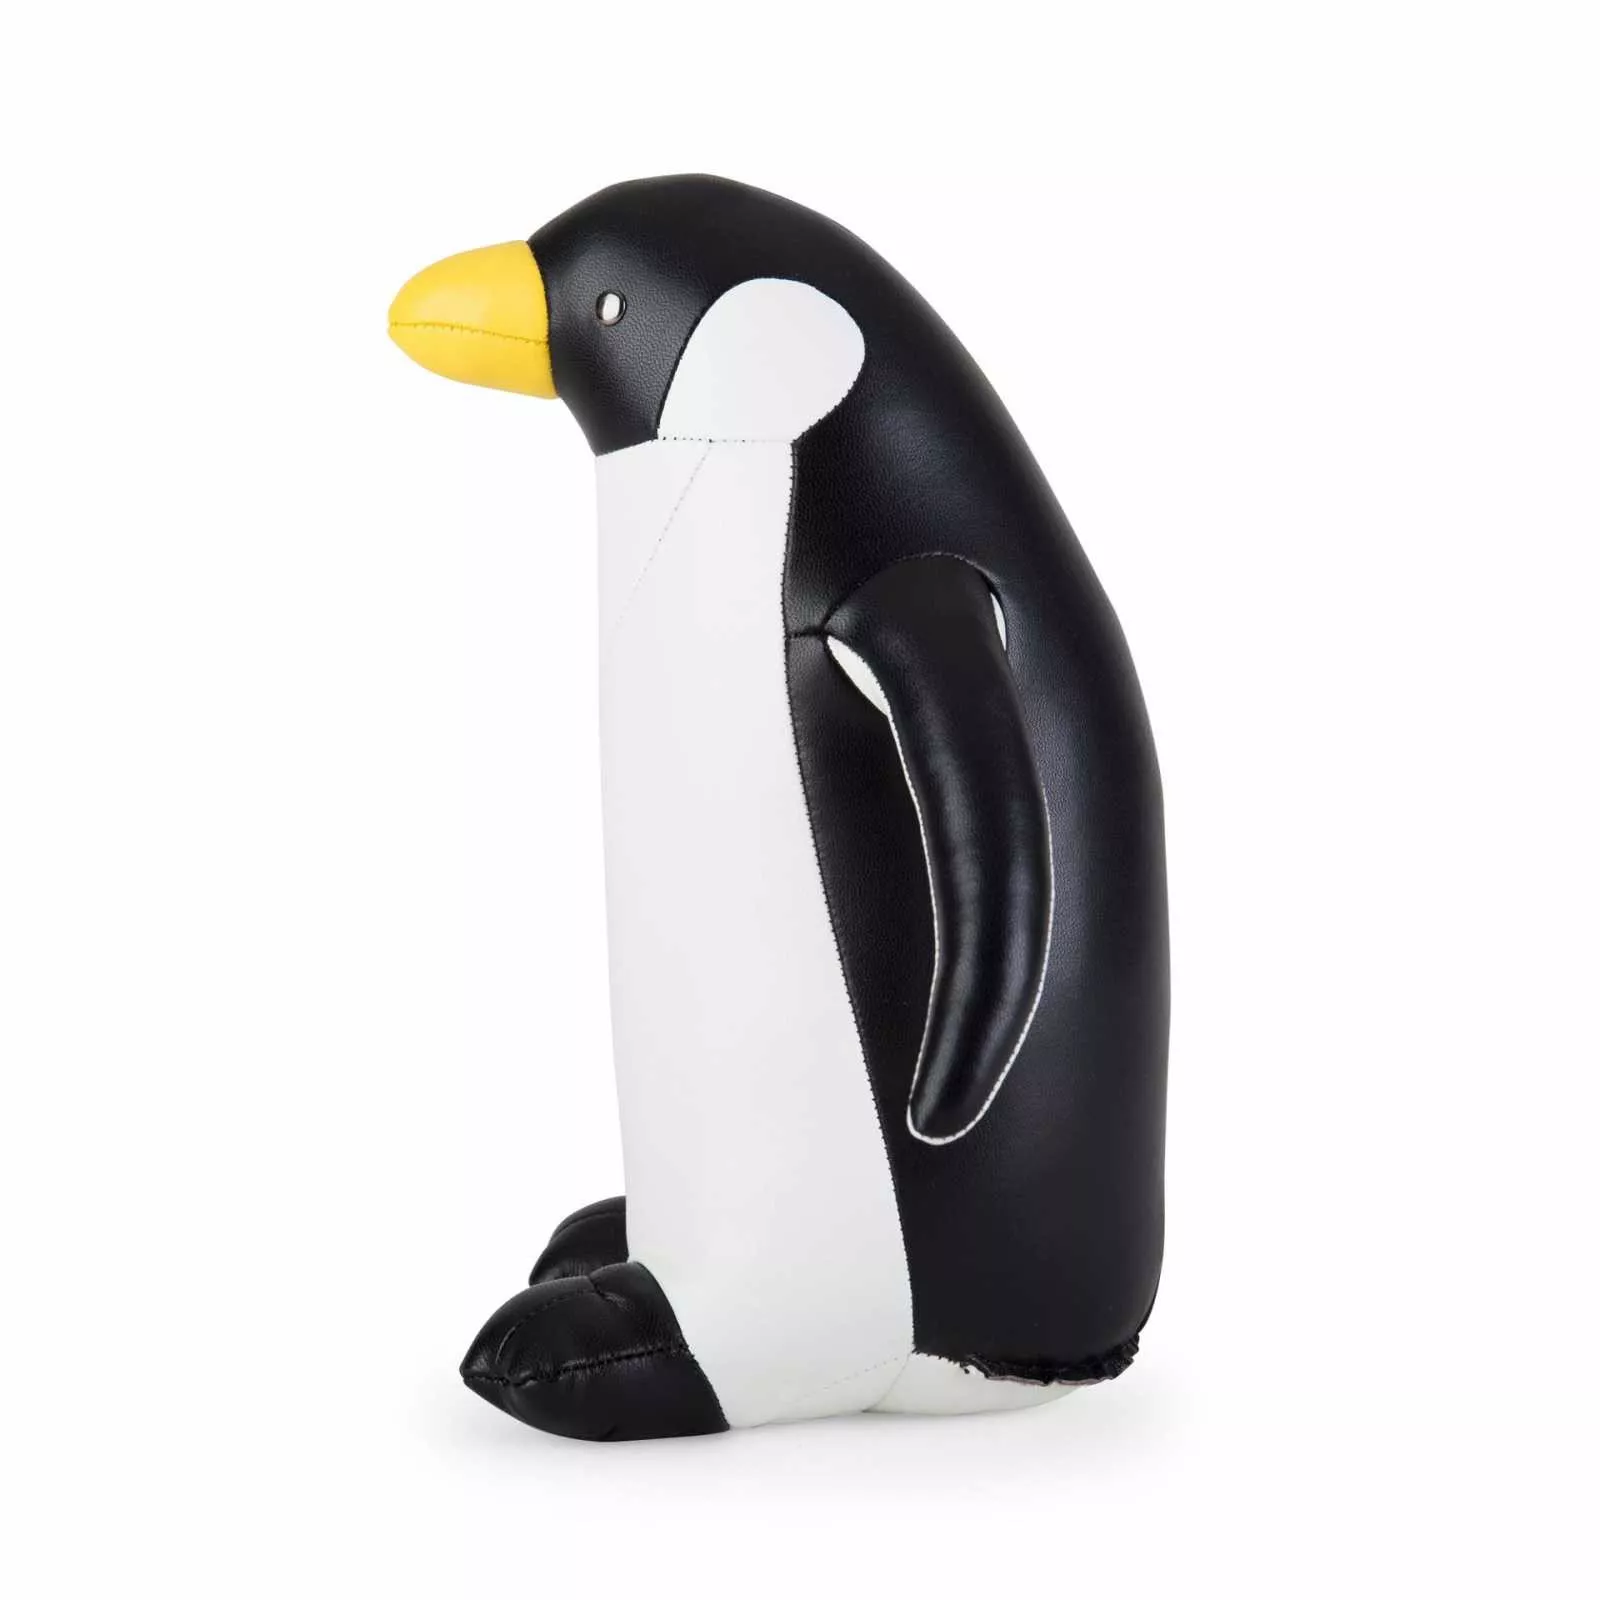 Букенд Penguin black-white 1 kg Zuny (ZCBV0290-0201) - Фото nav 3